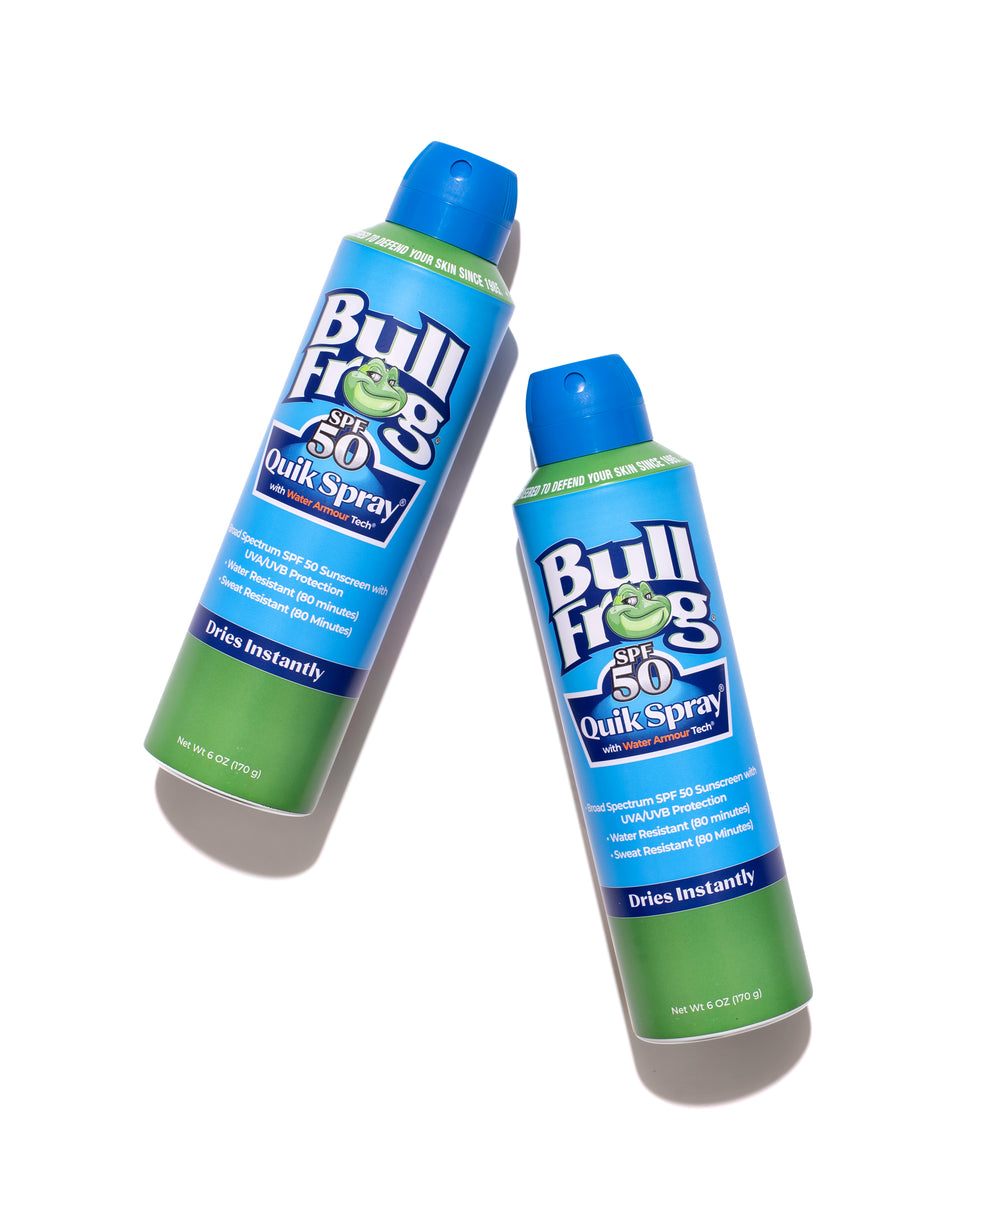 Bullfrog Quik Spray Sunscreen SPF 50, Broad Spectrum UVA/UVB